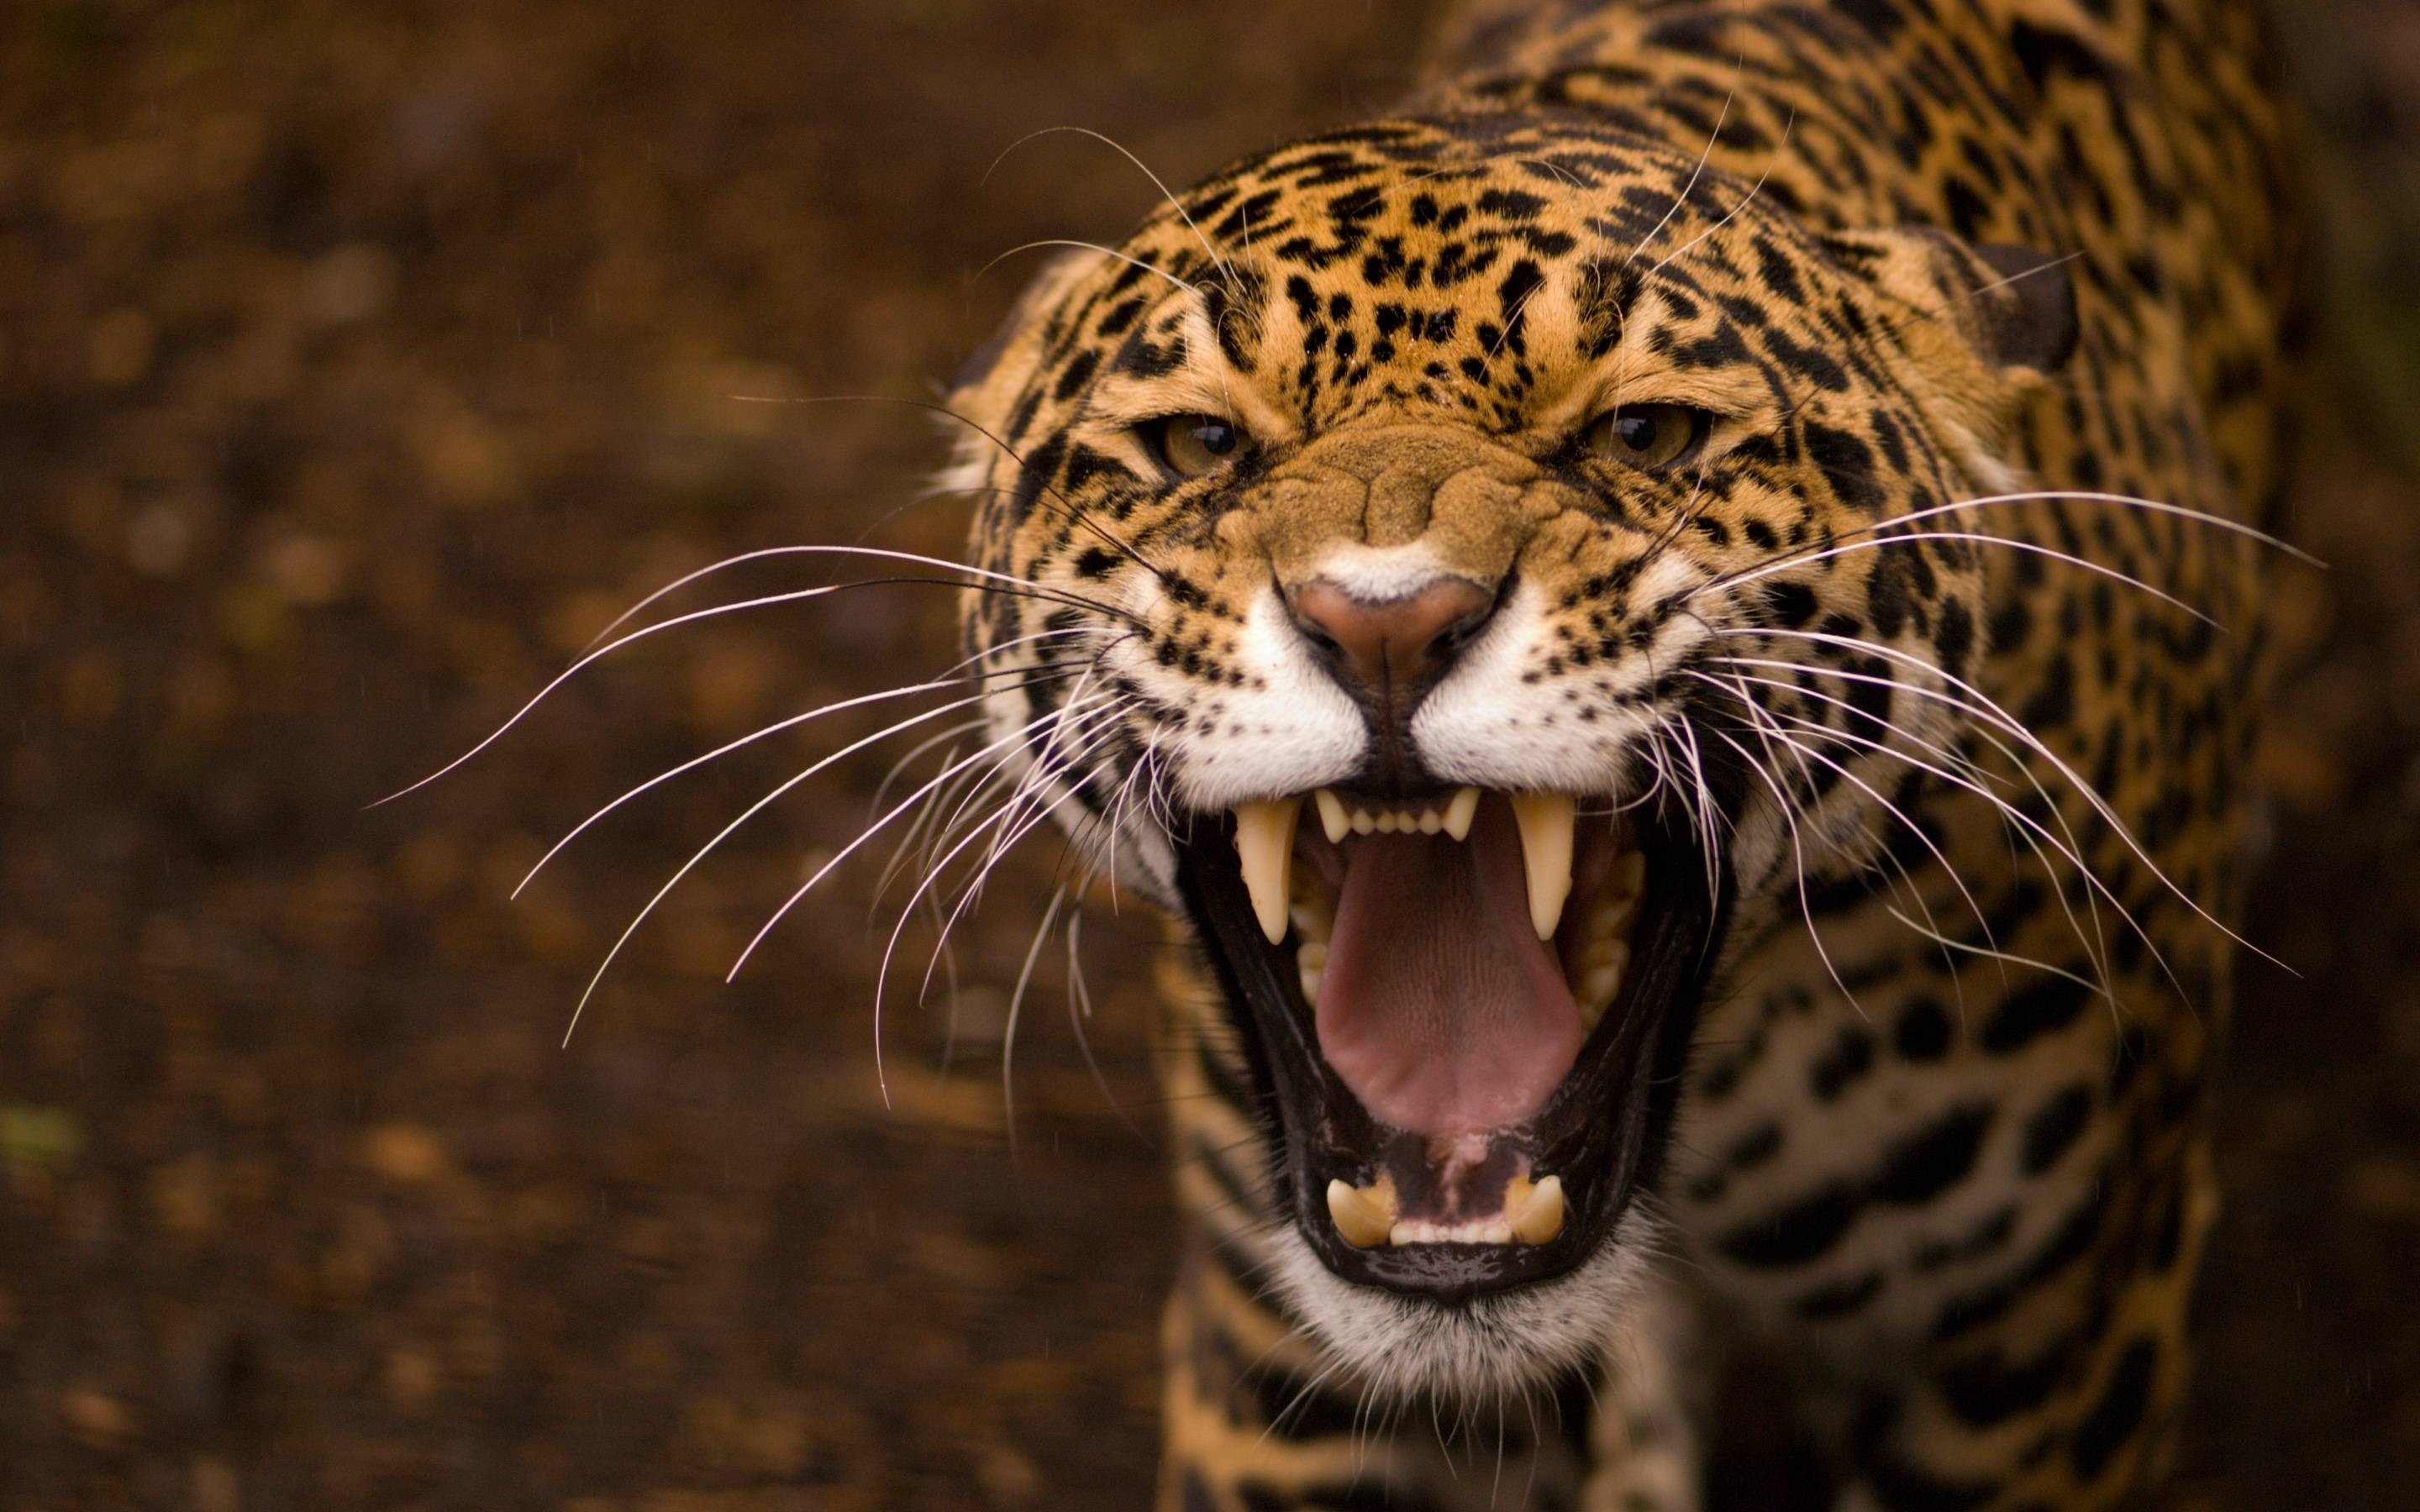 General 2880x1800 leopard animals mammals big cats fangs closeup